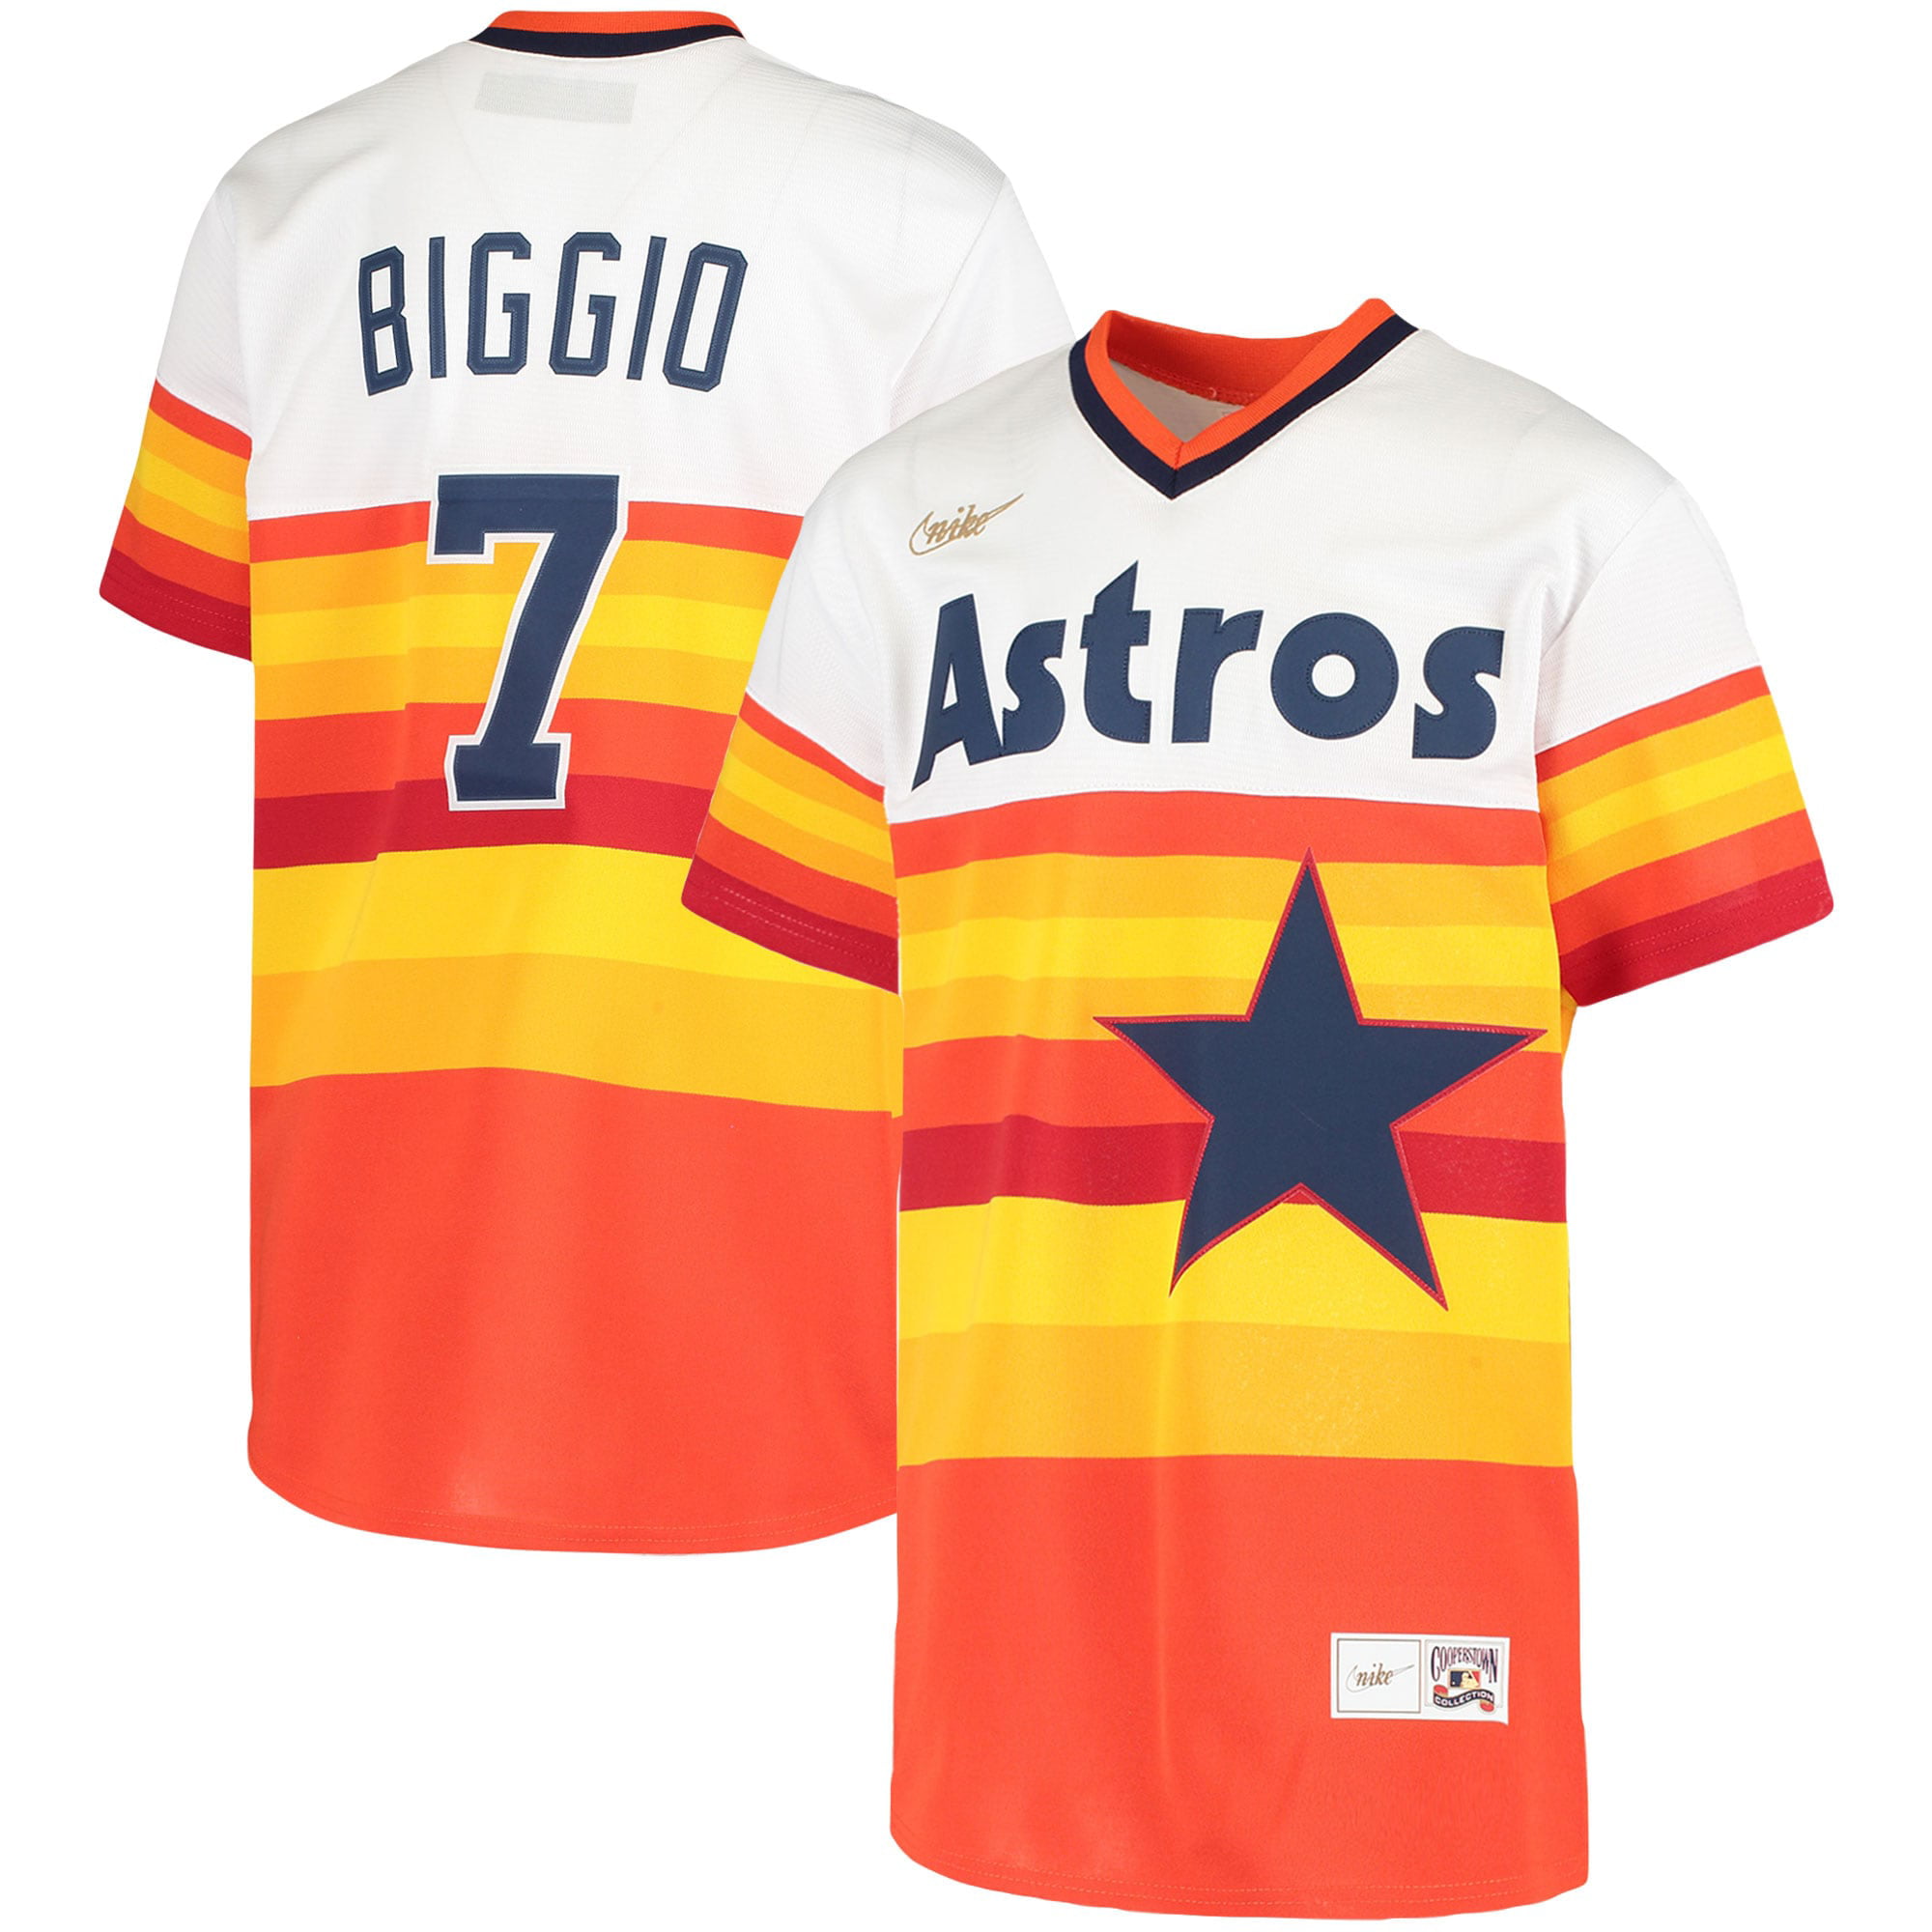 biggio astros jersey